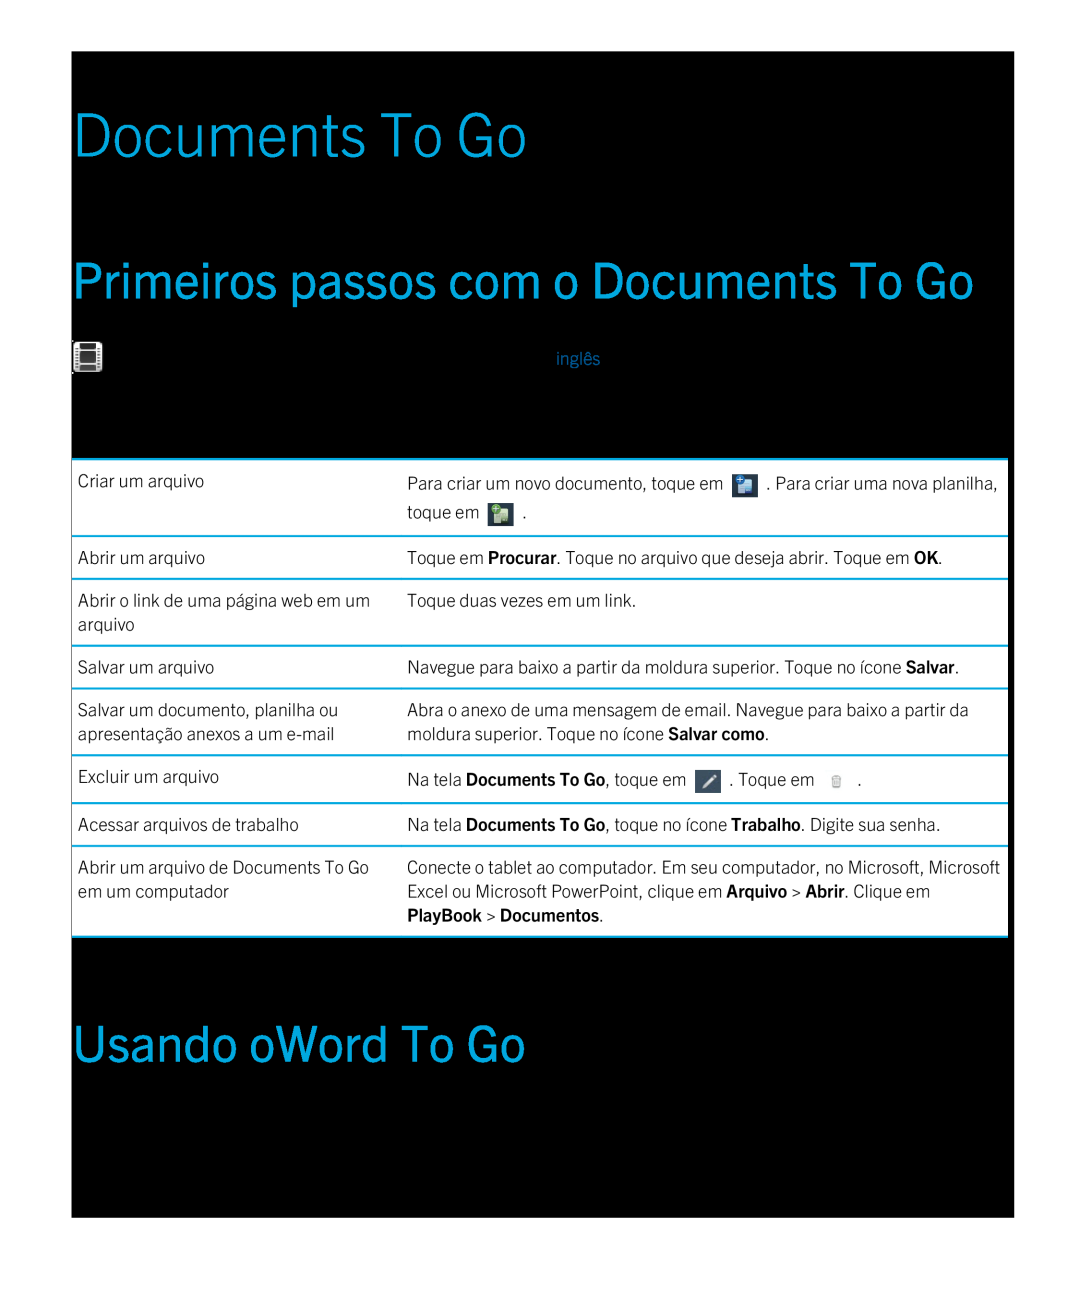 Blackberry 2.0.1 manual Primeiros passos com o Documents To Go, Usando oWord To Go, PlayBook Documentos 